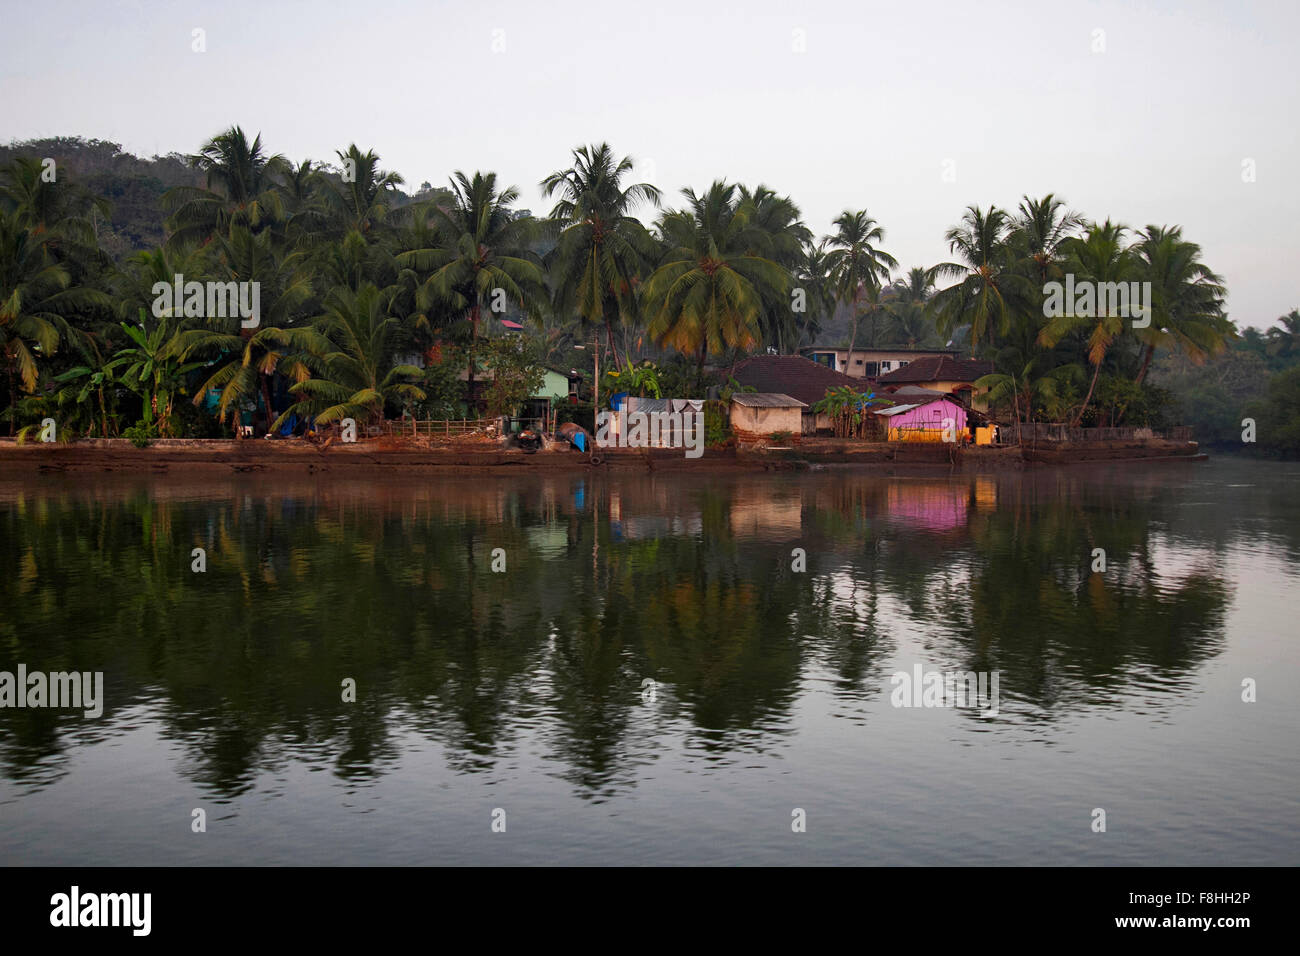 A small suburb of Ecossim on Bardez river, North Goa, India Stock Photo